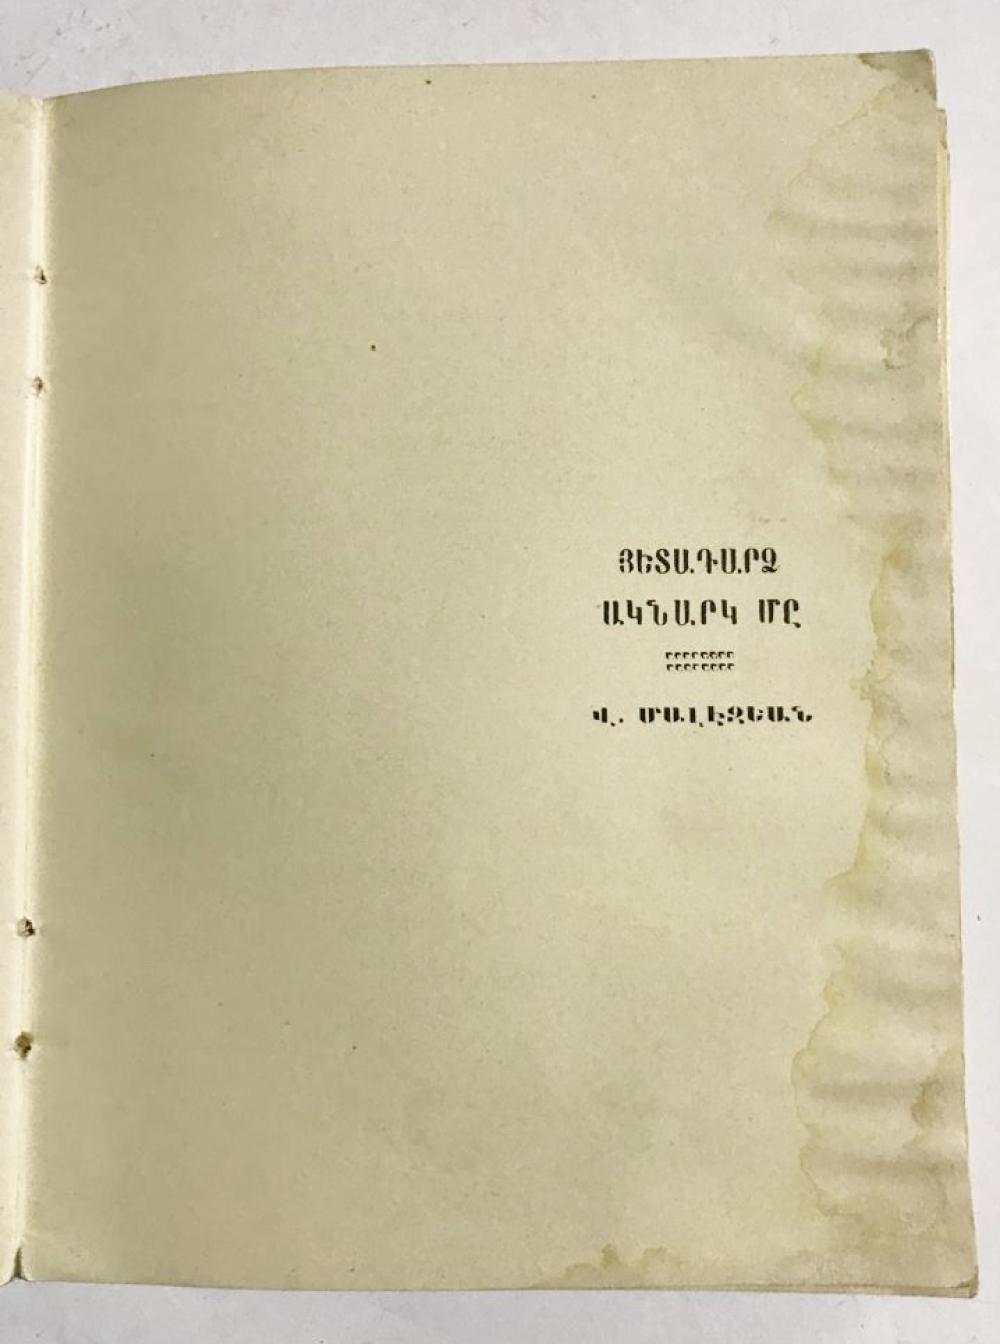 Geçmiş Günler - Kadıköy'ün Edebiyat Akşamlarına ait Hatıra Kitabı / V. Malezyan